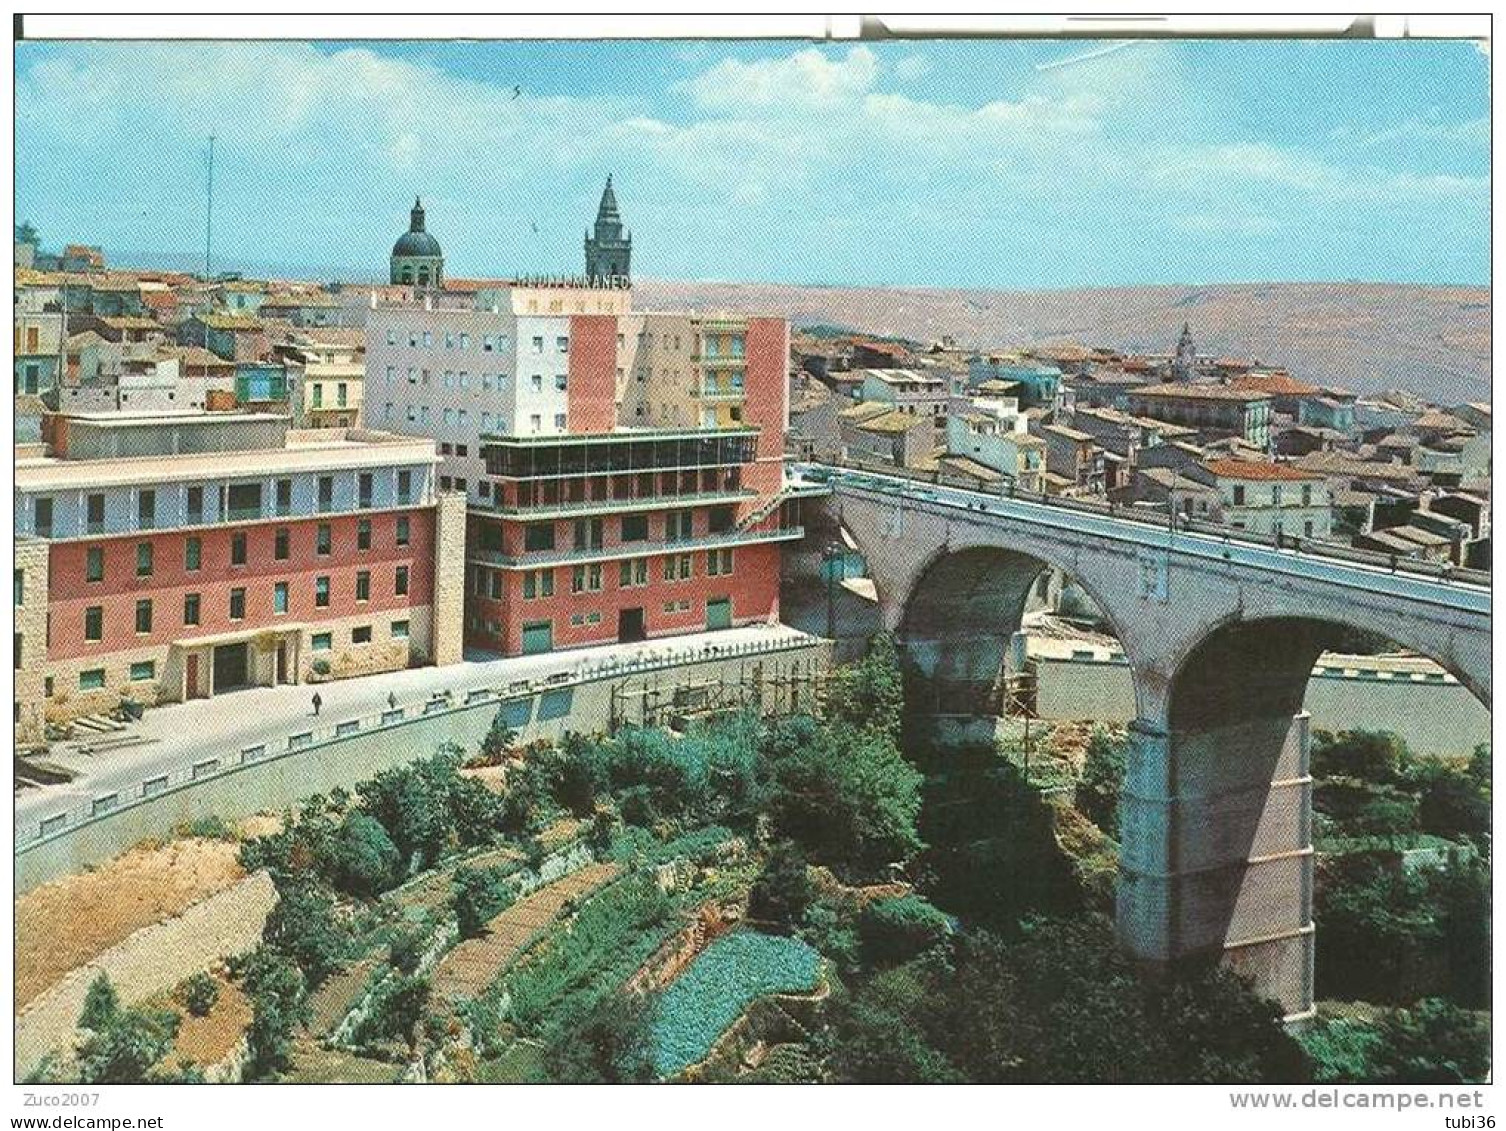 RAGUSA - PALAZZO DEL GENIO CIVILE - HOTEL MEDITERRANEO - COLORI VIAGGIATA  1965 - ANIMATA - Ragusa